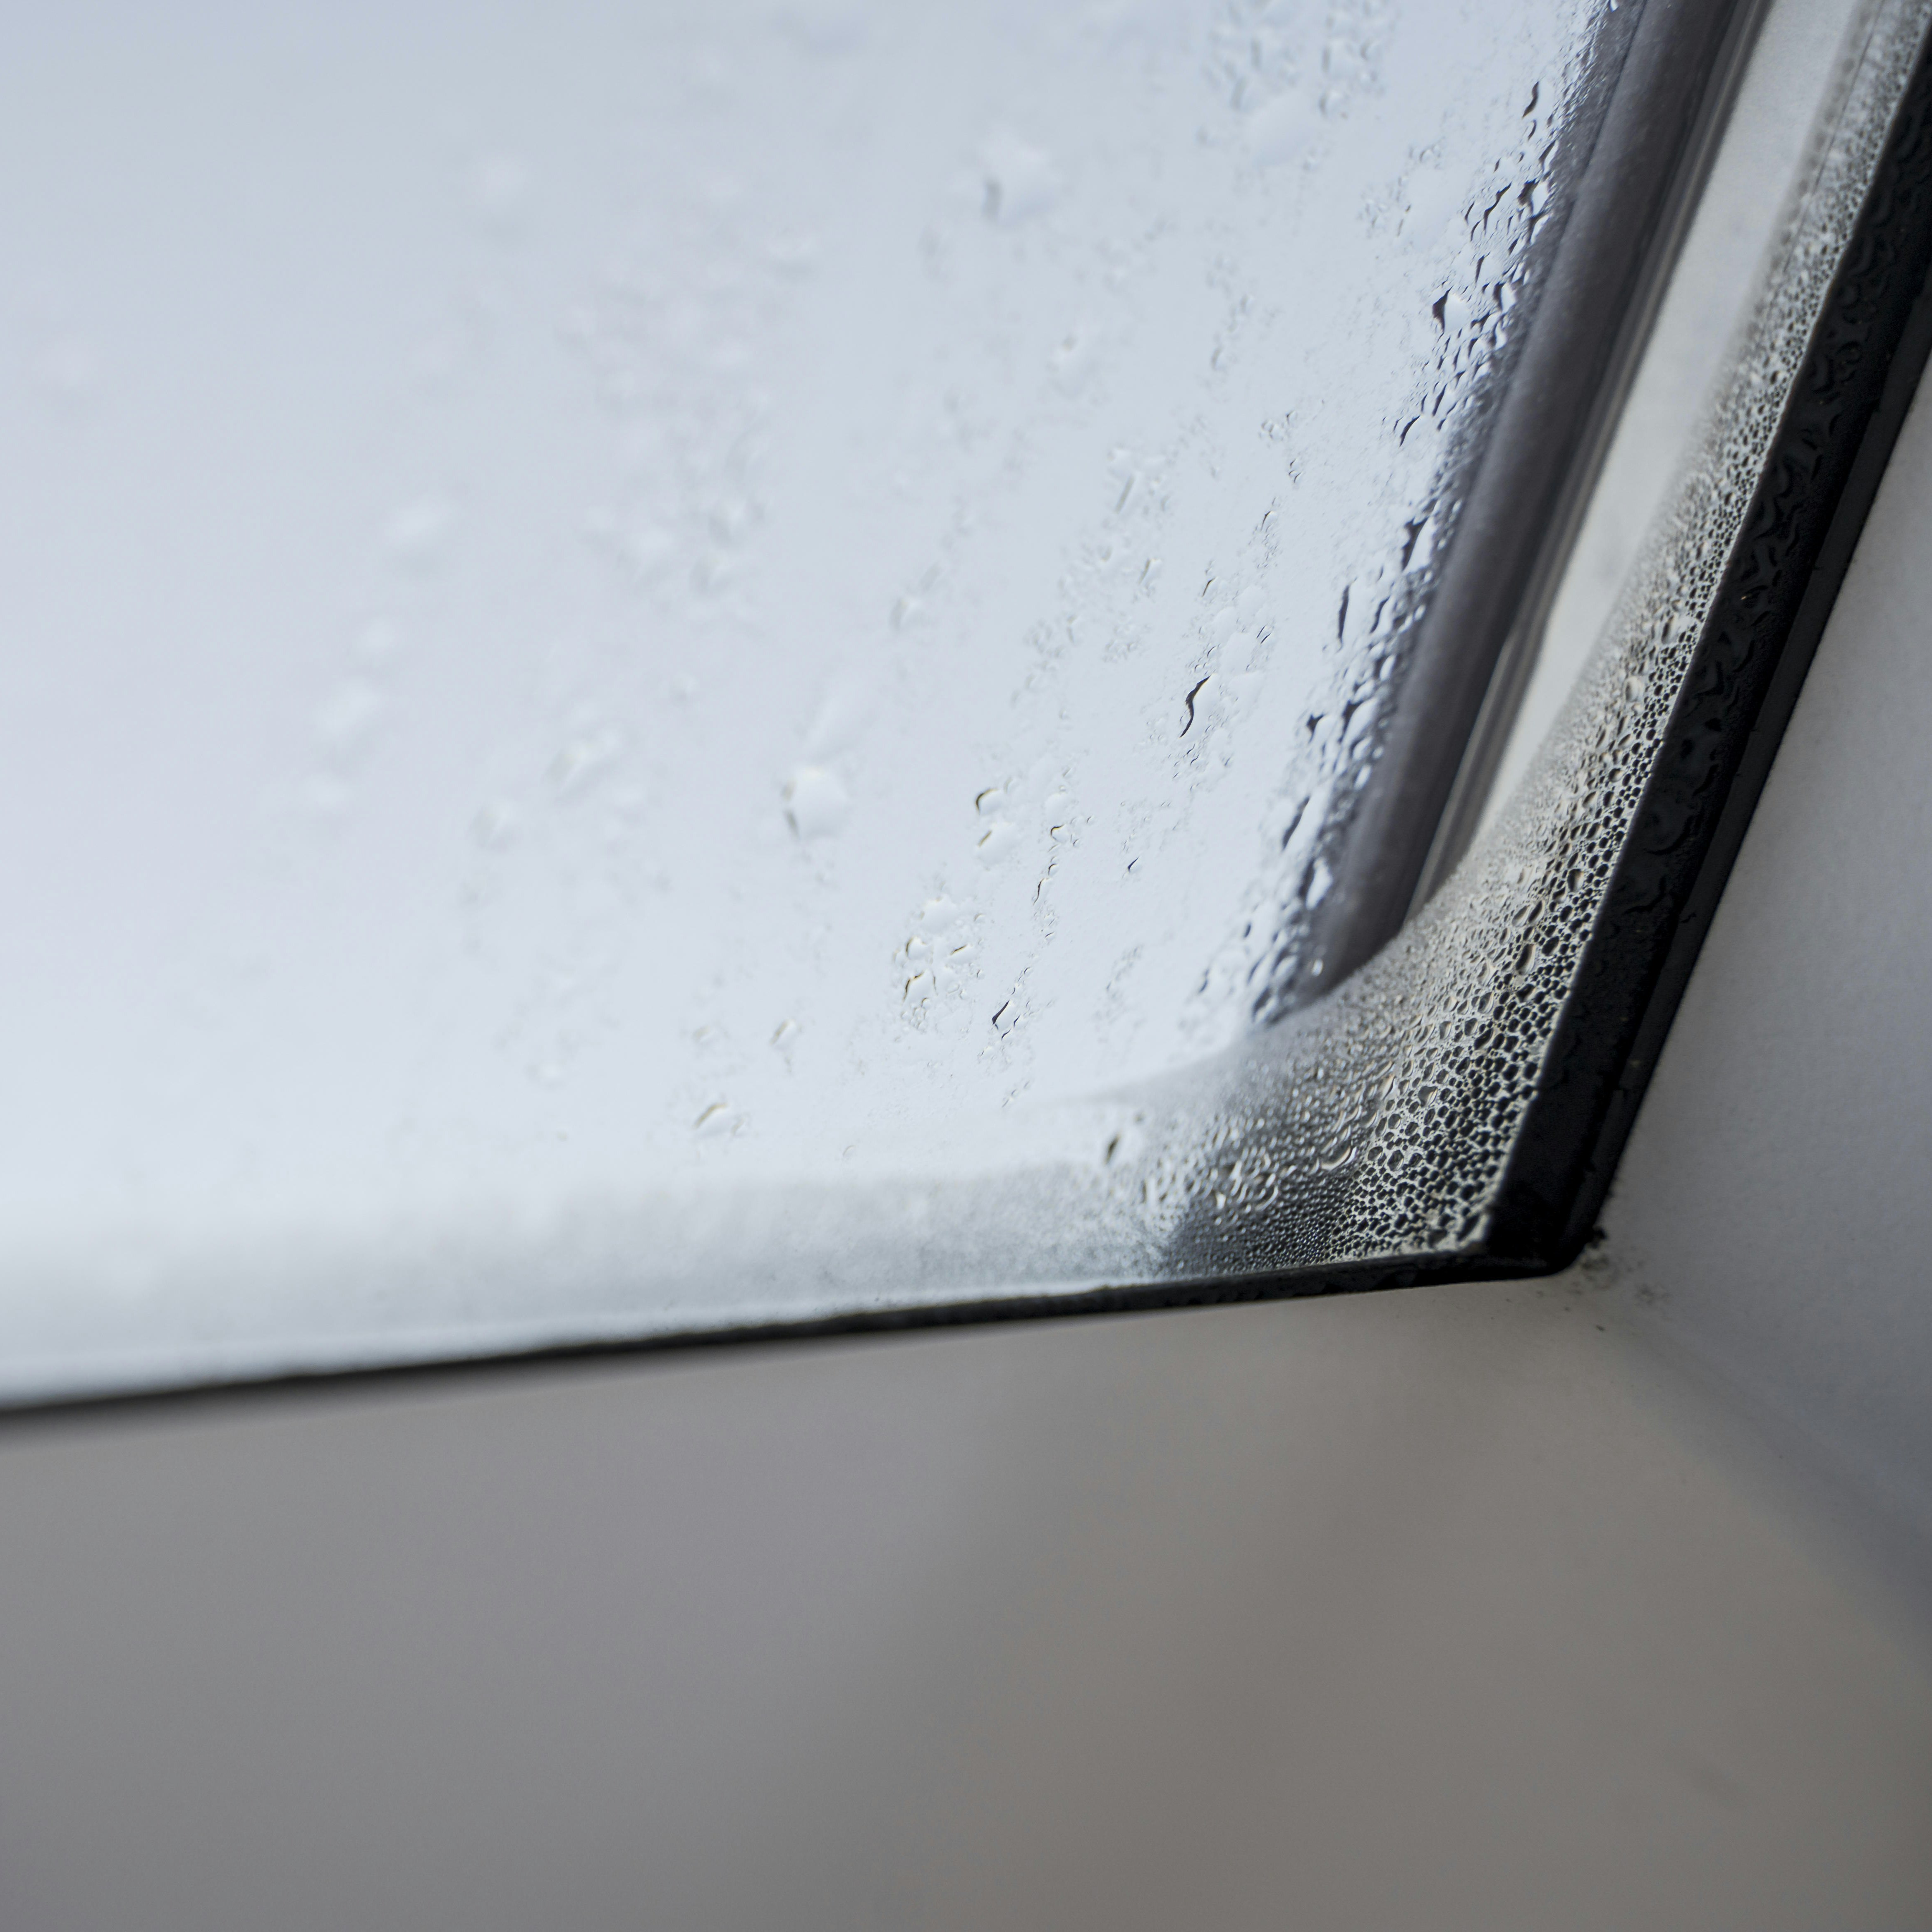 Kondenswasser am Fenster – was kann ich tun?